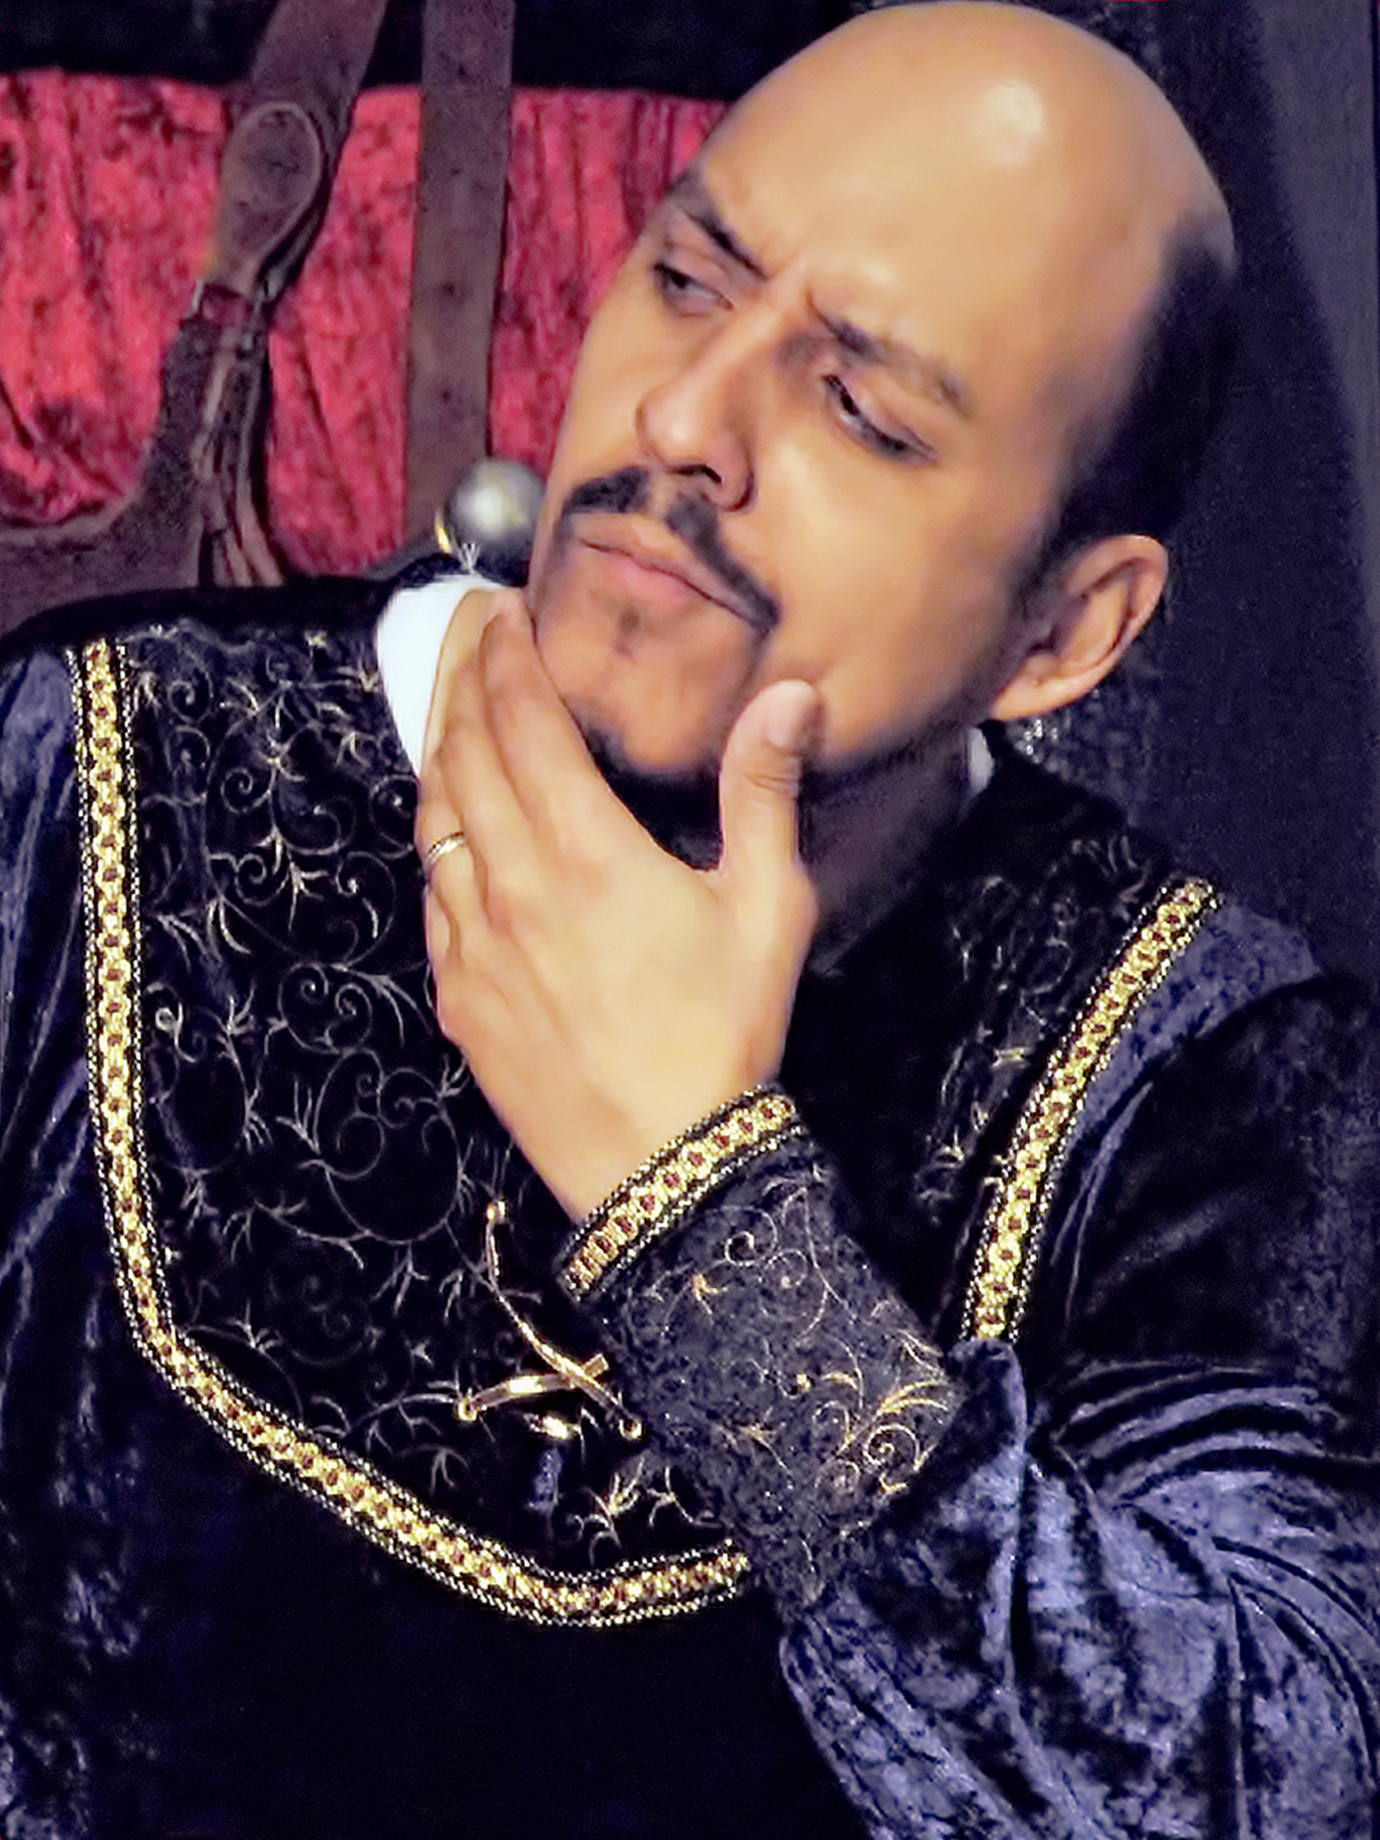 Mario Lara as King Kalimari.